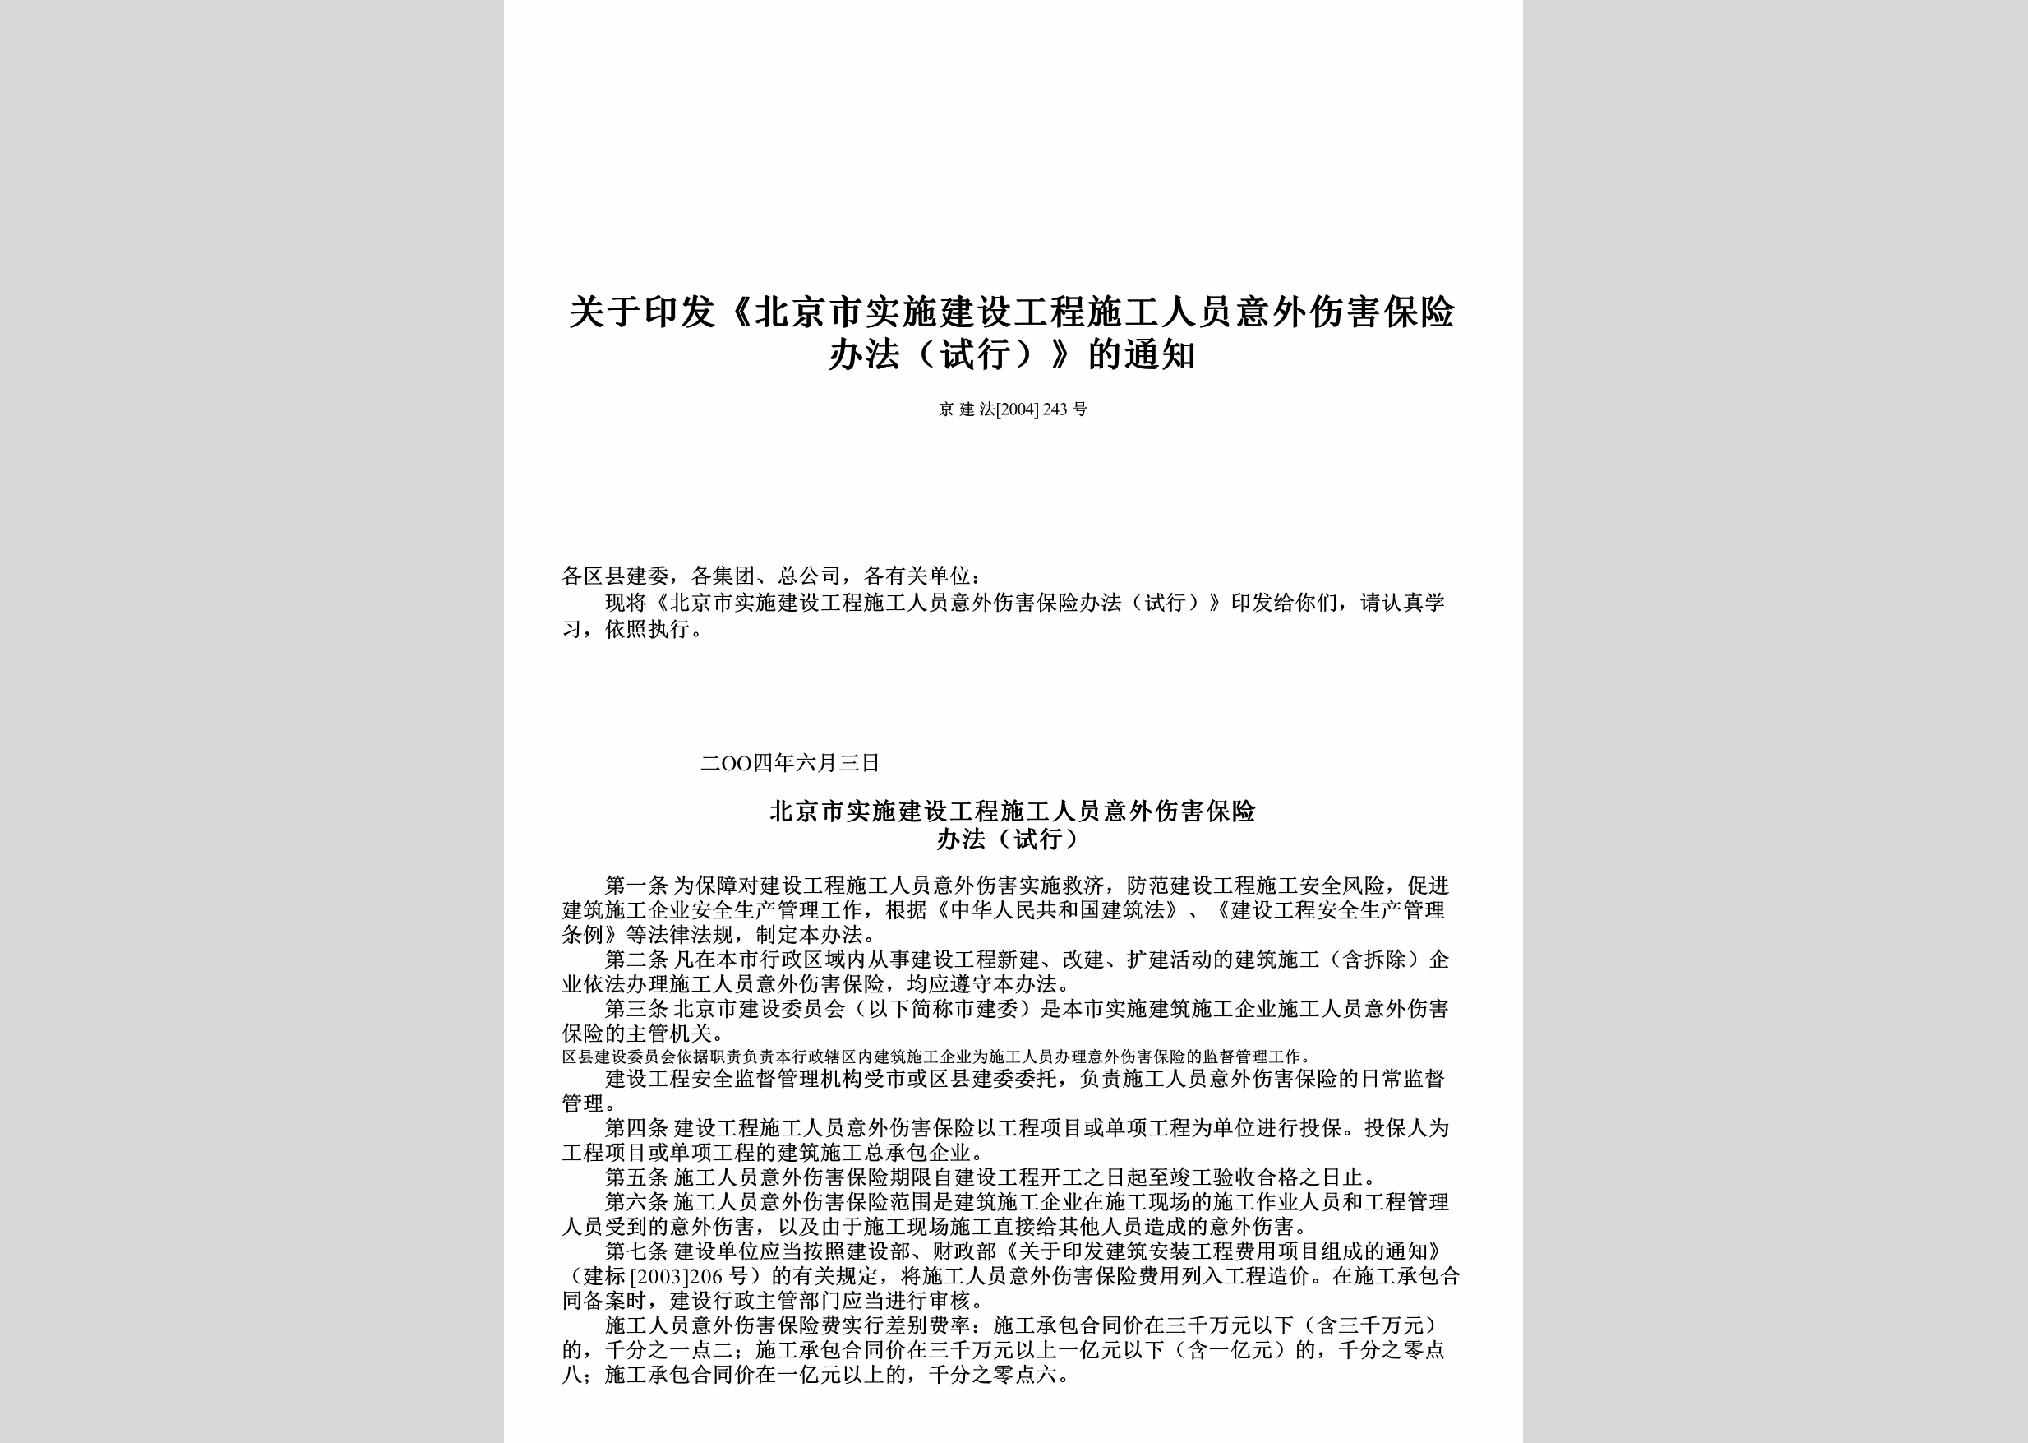 京建法[2004]243号：关于印发《北京市实施建设工程施工人员意外伤害保险办法（试行）》的通知